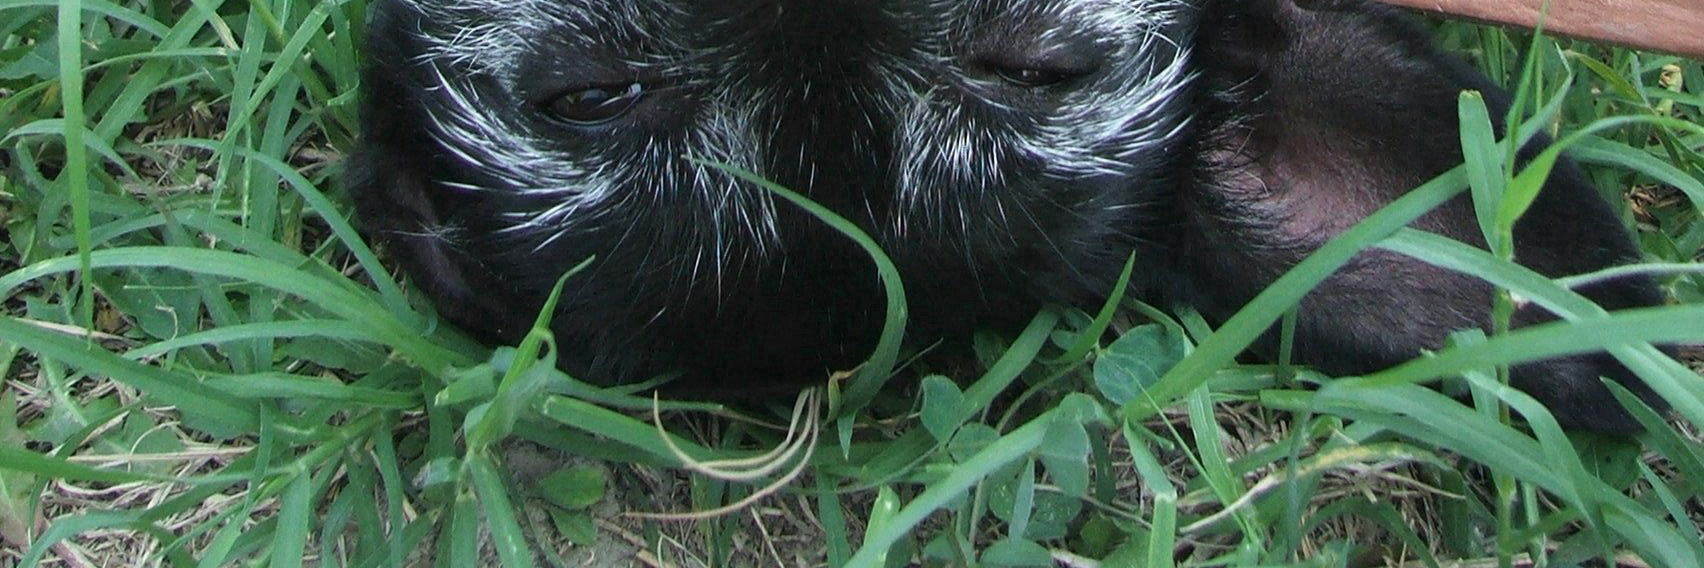 Isotta, uno dei cani